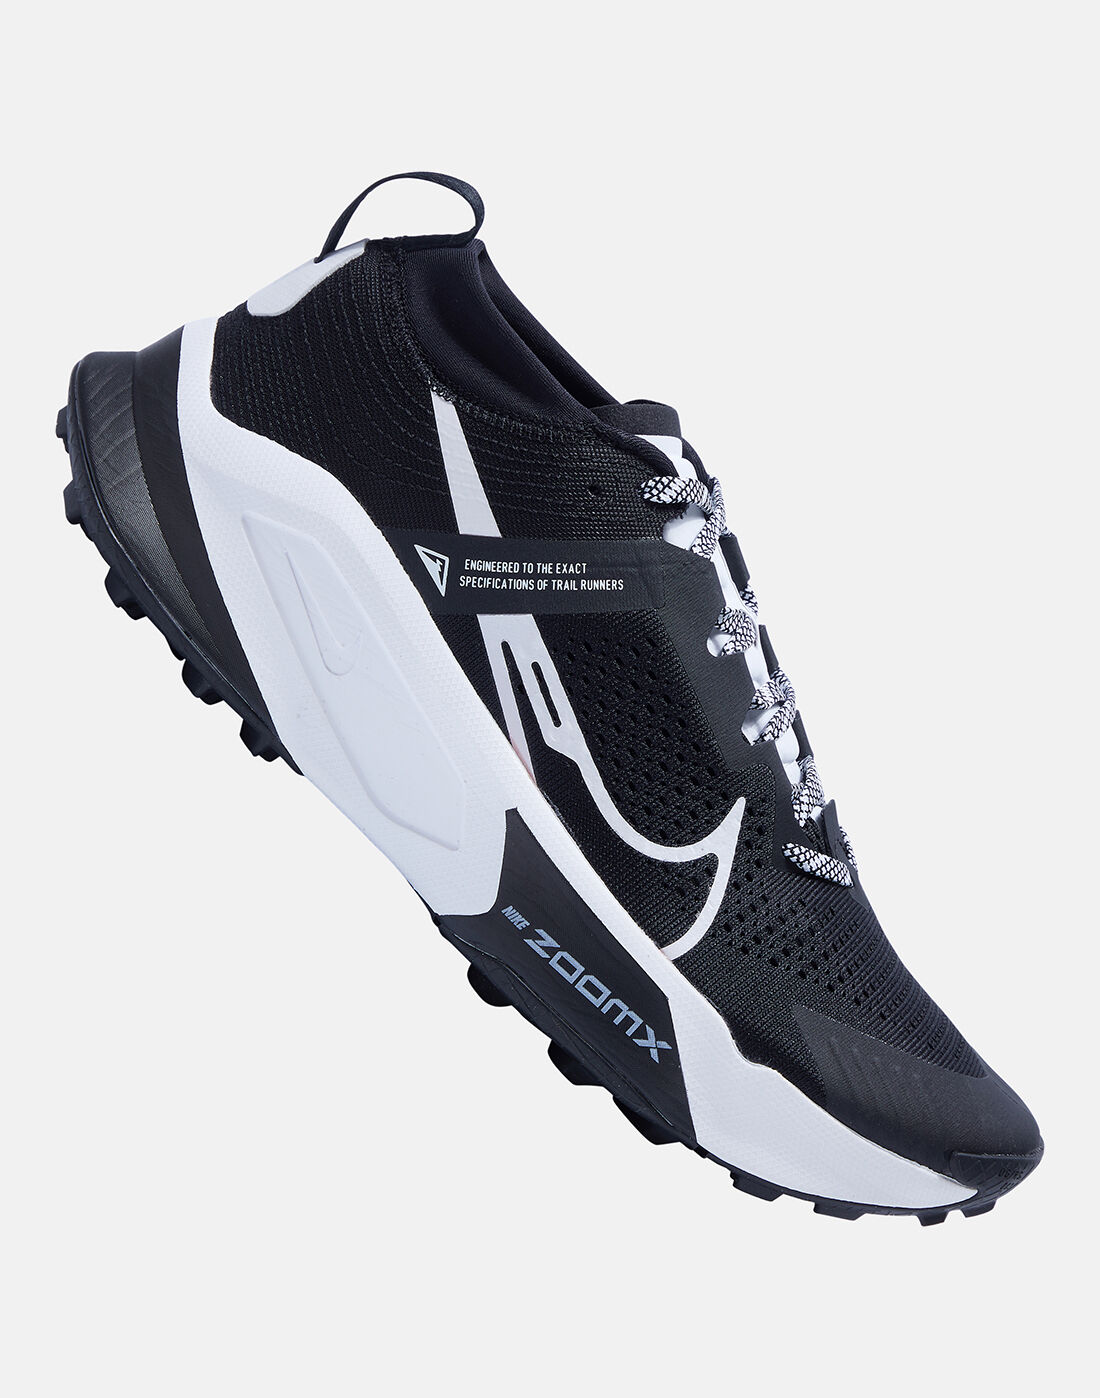 NIKE LITEFORCE III Sneakers For Men - Buy DARK MUSHROOM/LINEN-MAX ORANGE  Color NIKE LITEFORCE III Sneakers For Men Online at Best Price - Shop  Online for Footwears in India | Flipkart.com